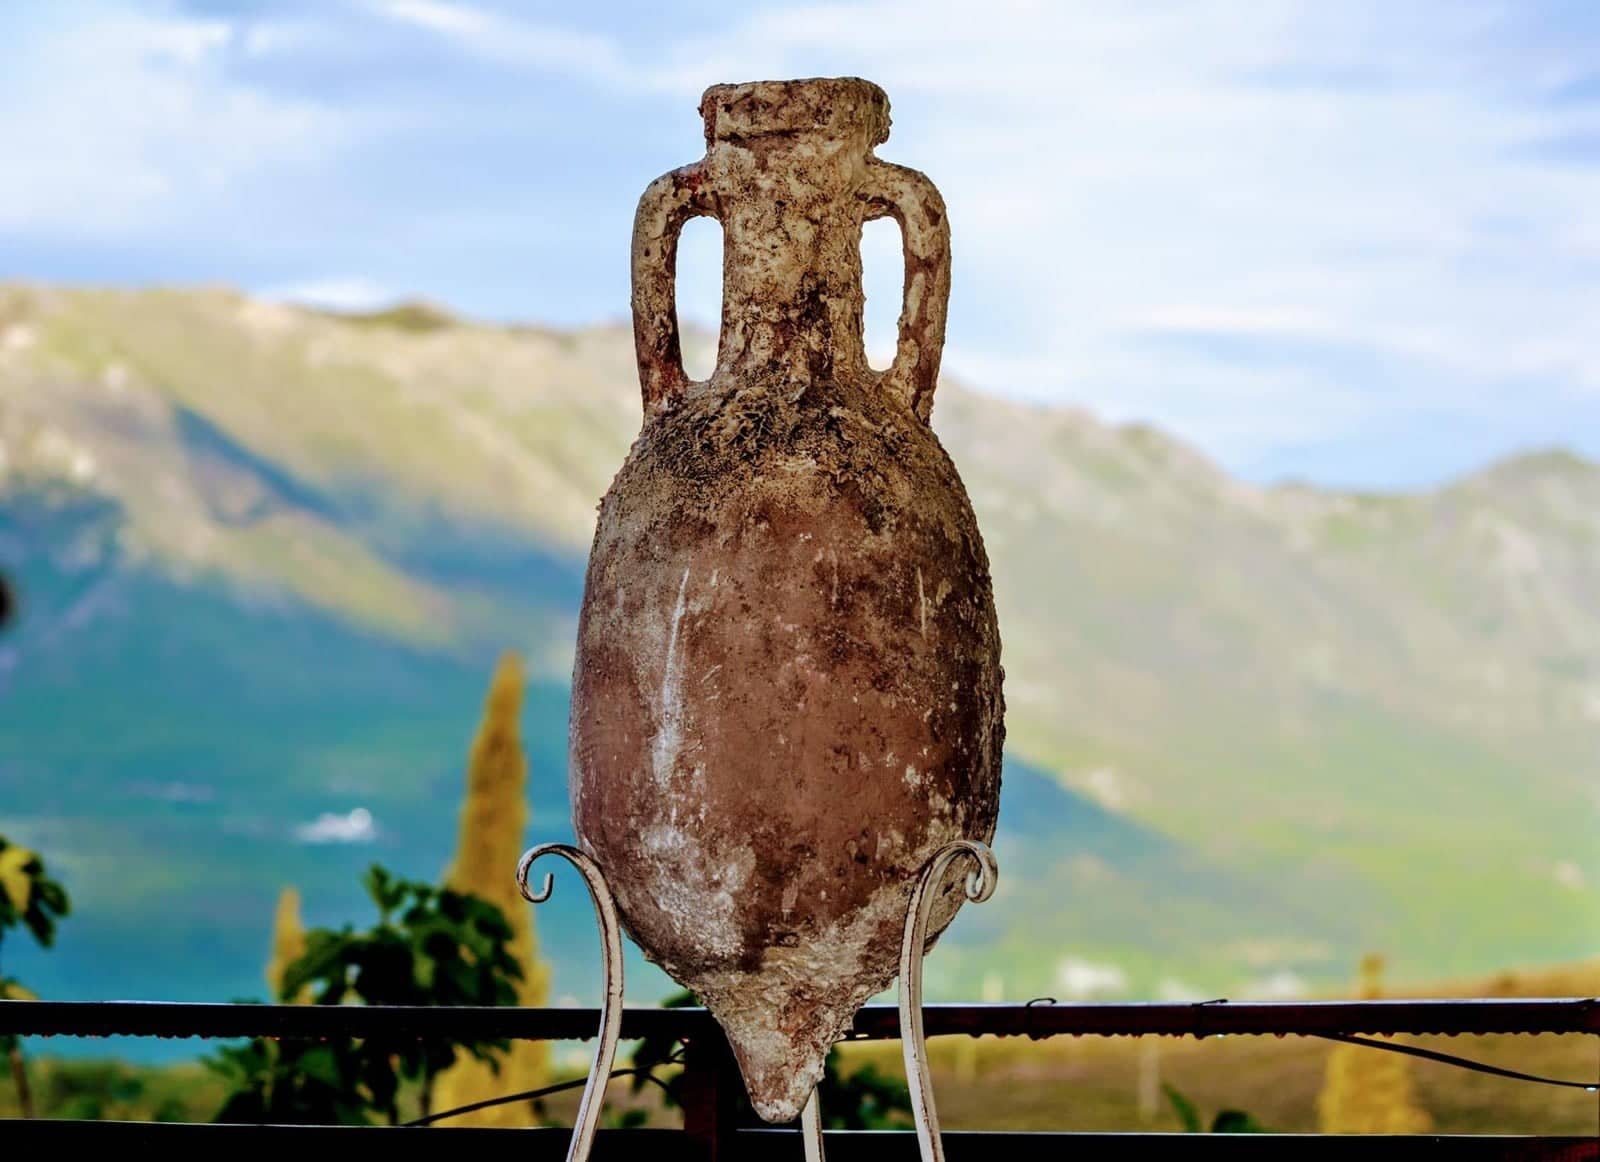 amphorae